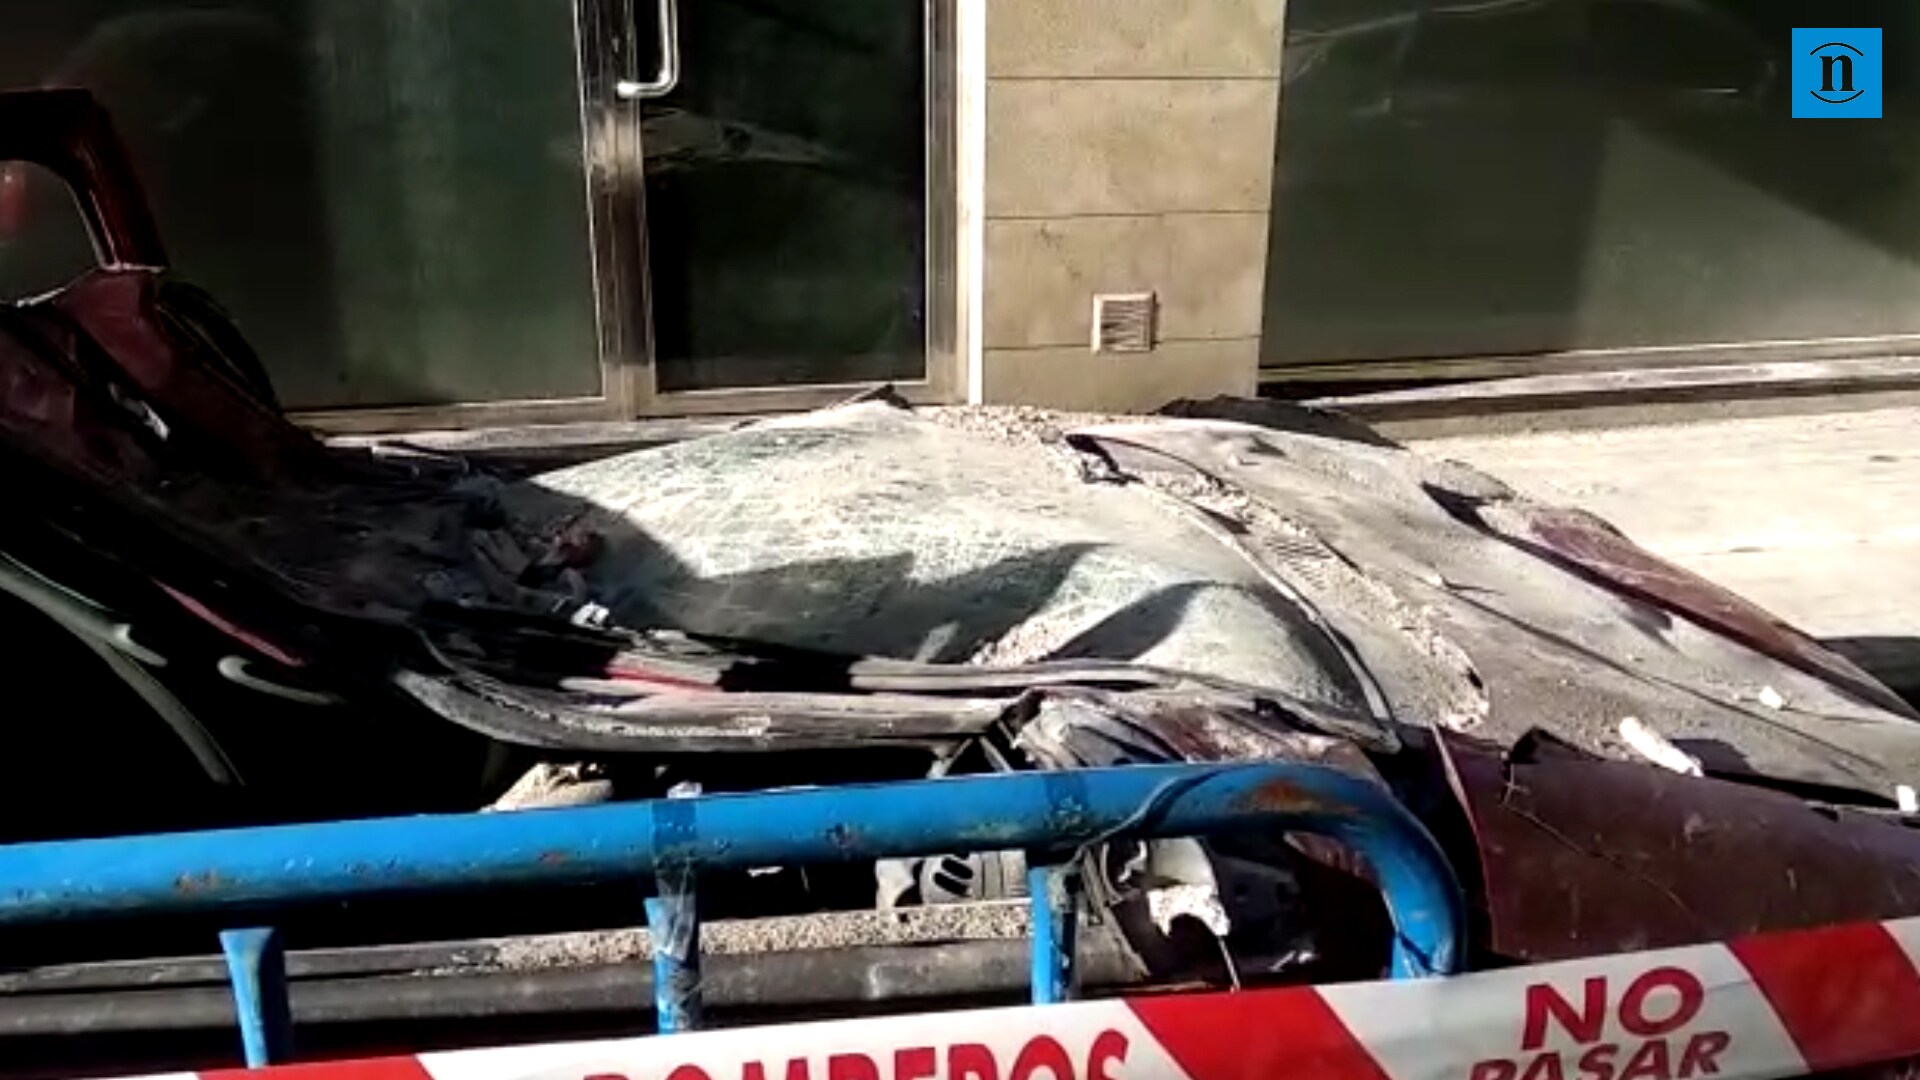 El edificio afectado por la explosión en Ponferrada no será derruido y se decreta prisión para el autor confeso